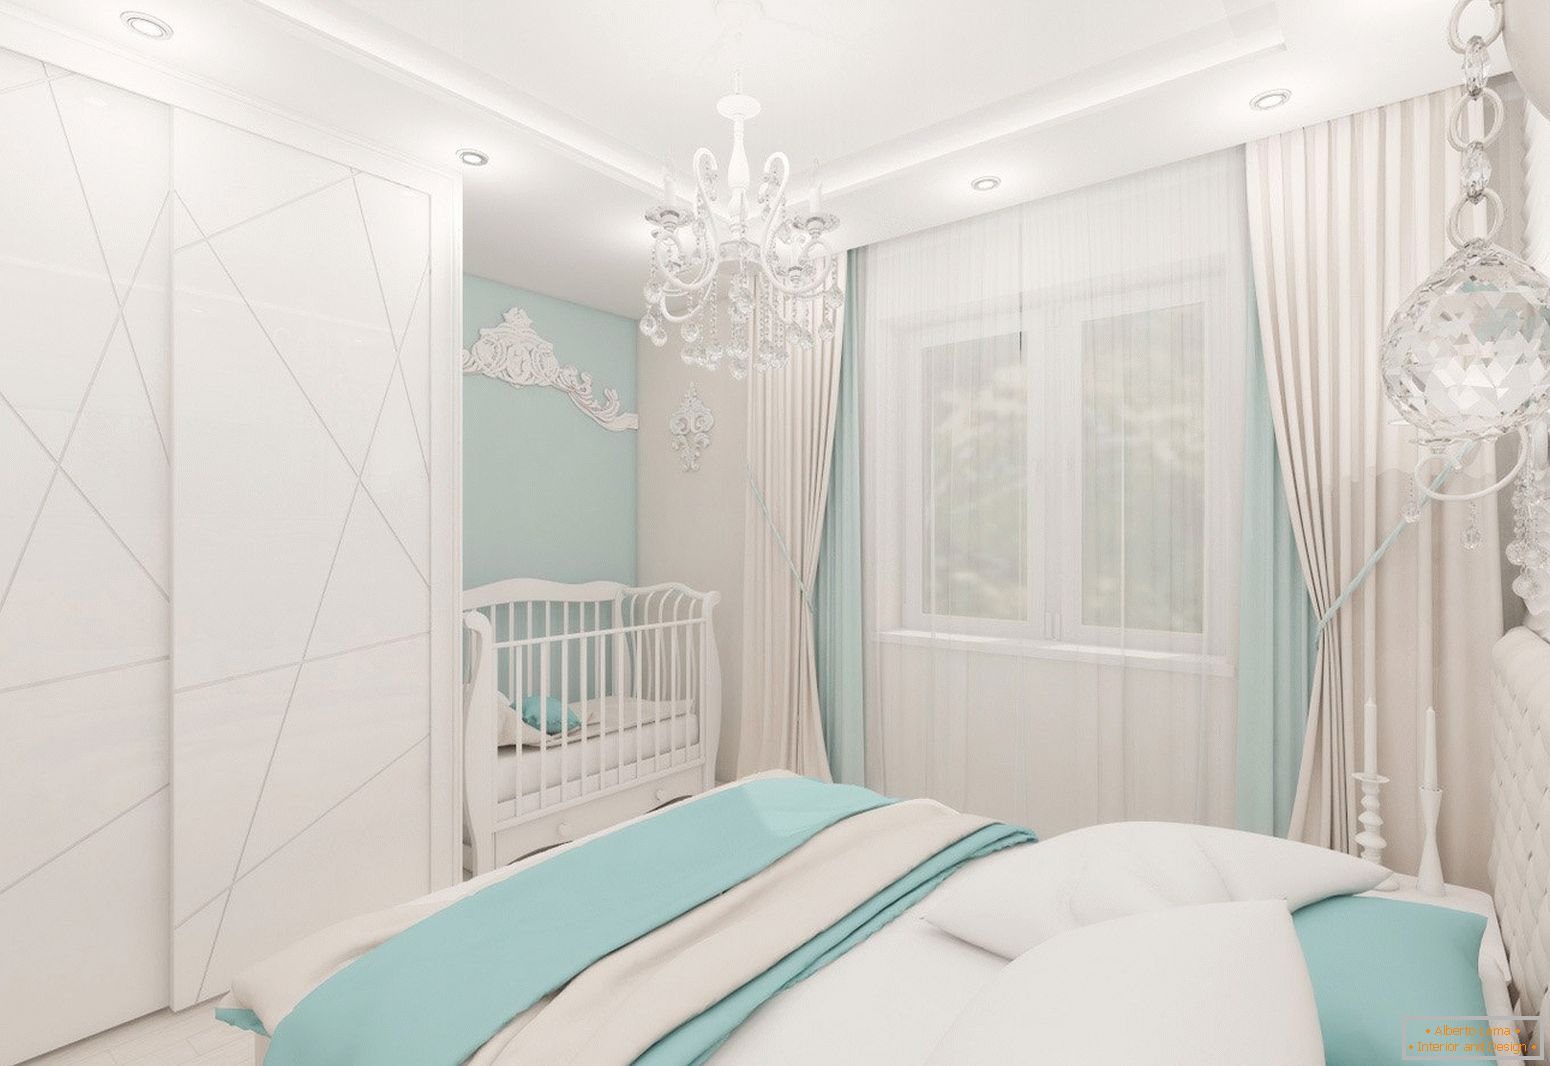 Bedroom design in light colors